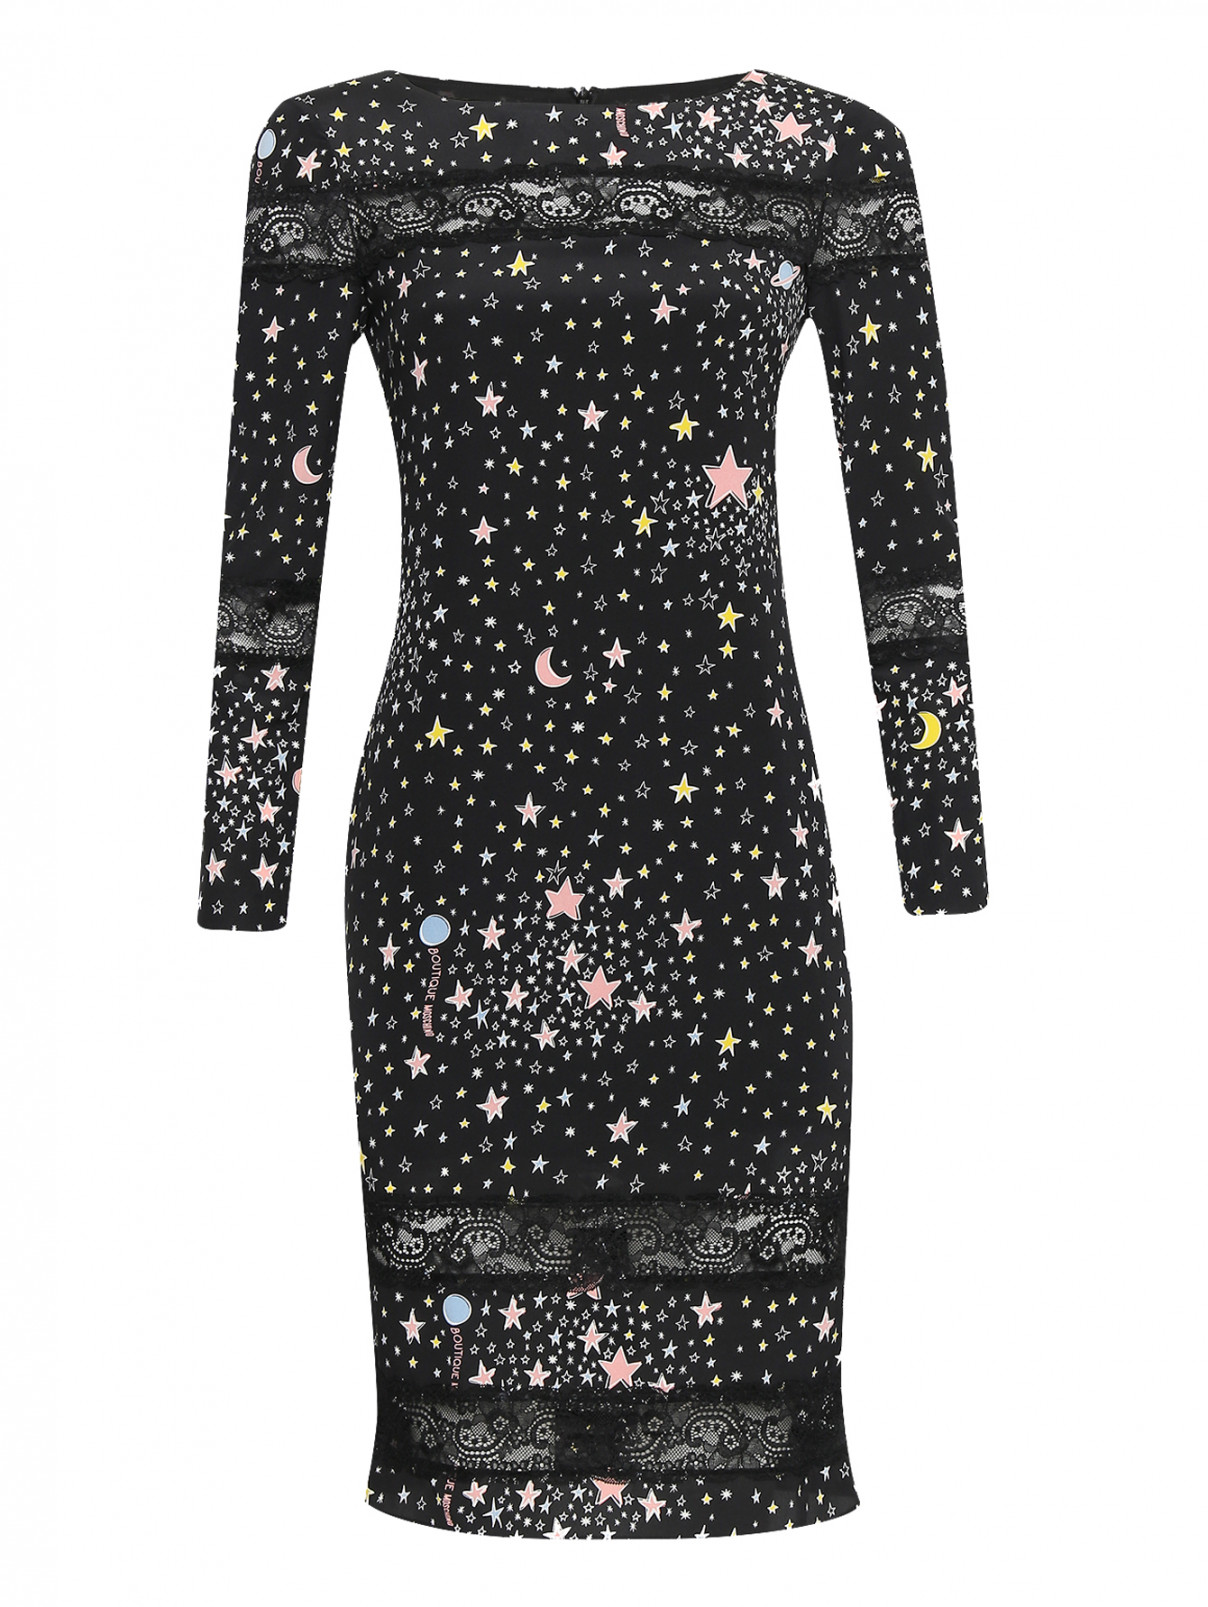 Платье из шелка с узором и кружевной отделкой BOUTIQUE MOSCHINO  –  Общий вид  – Цвет:  Черный